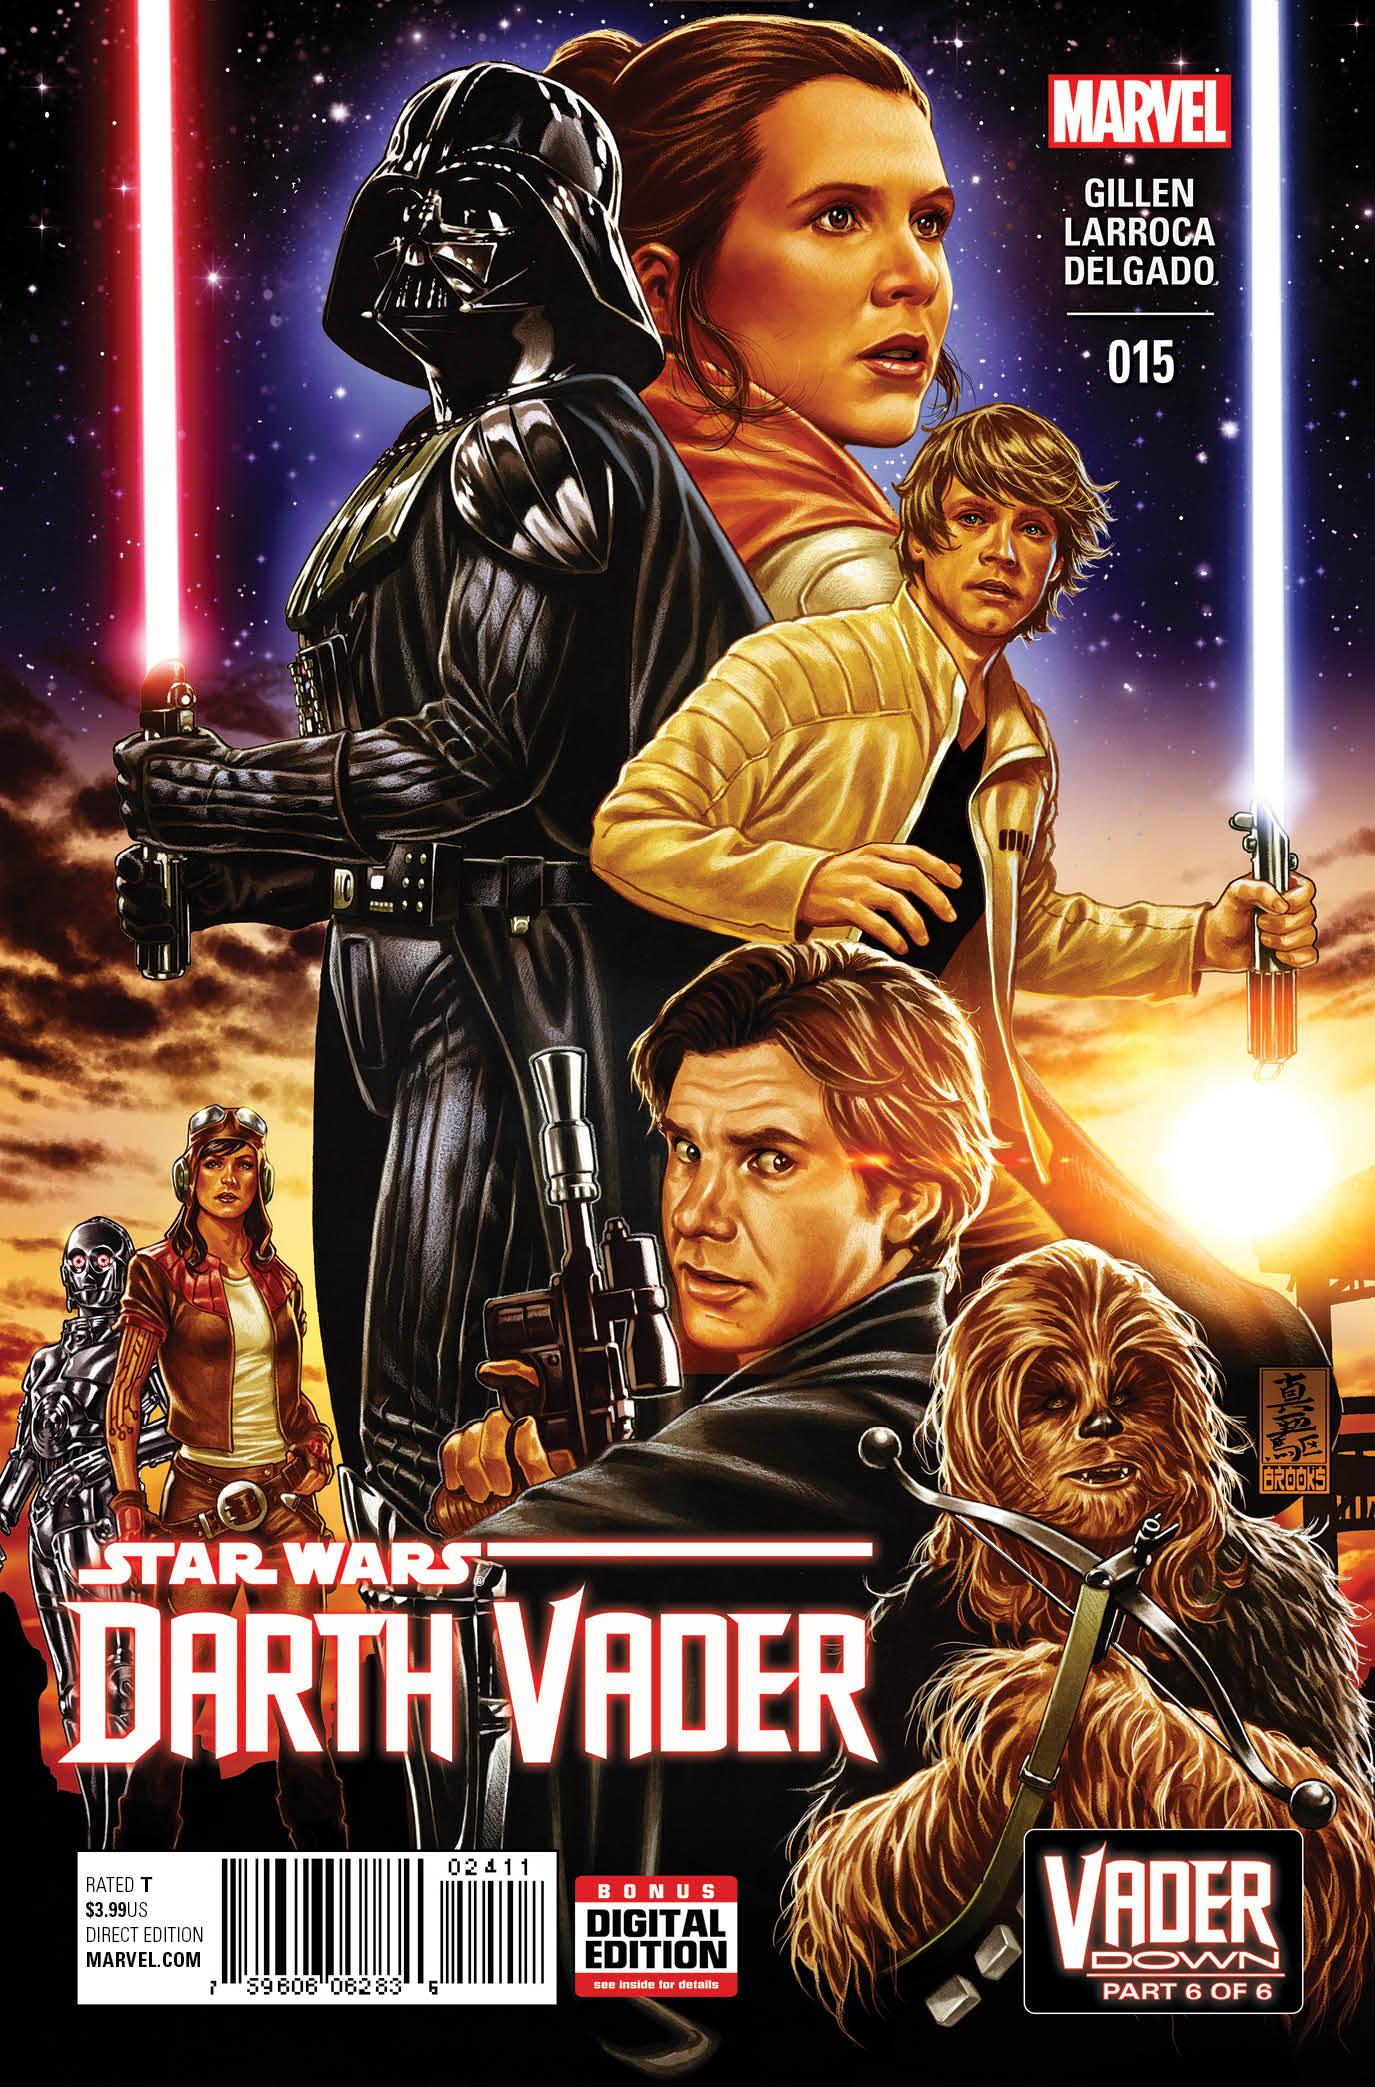 Darth Vader Vol. 1 #15